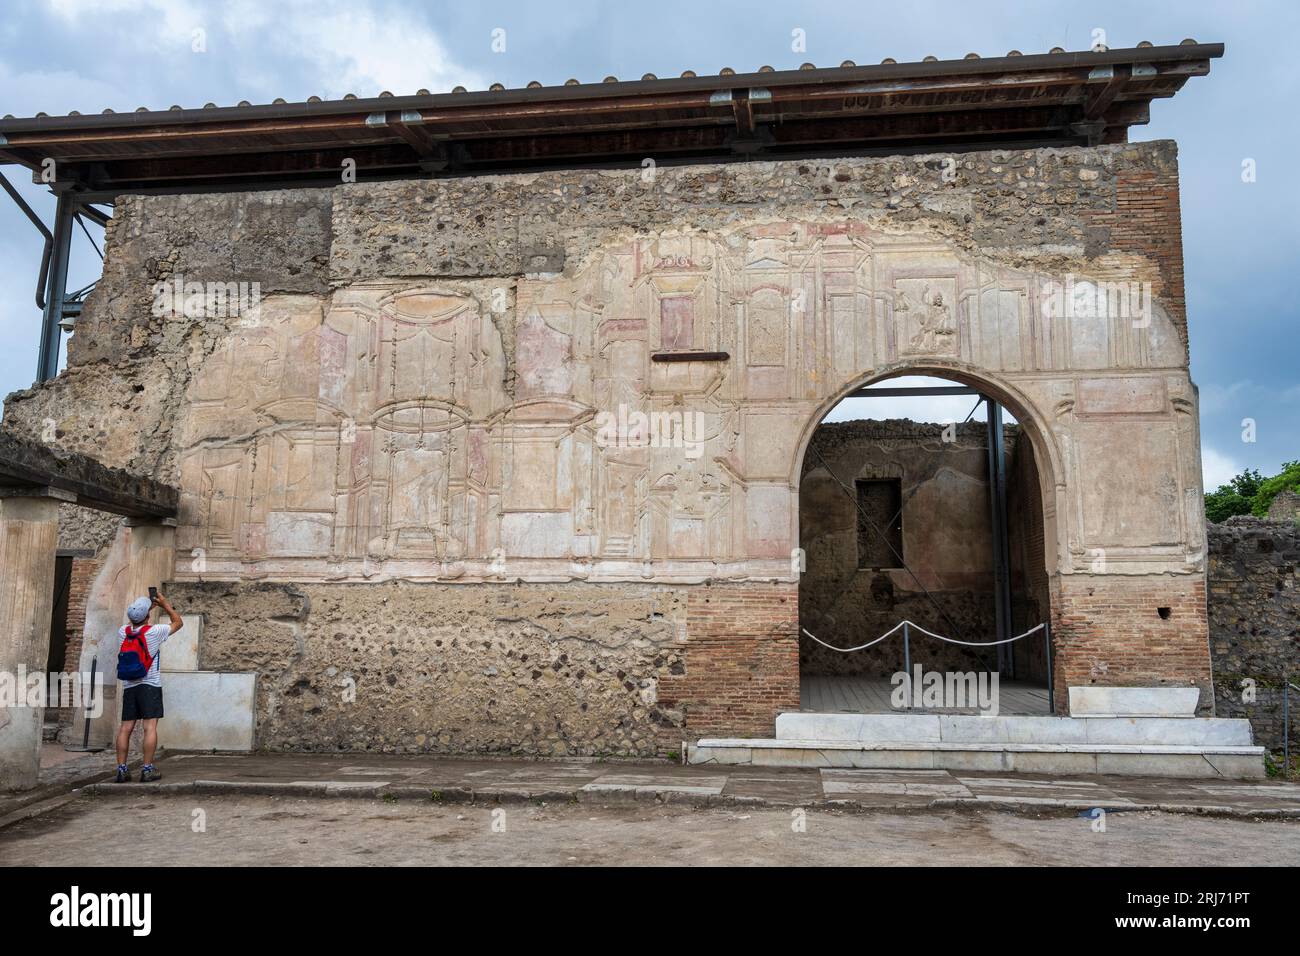 Bassorilievo delle Terme Stabiane nelle rovine dell'antica città di Pompei nella regione Campania Foto Stock